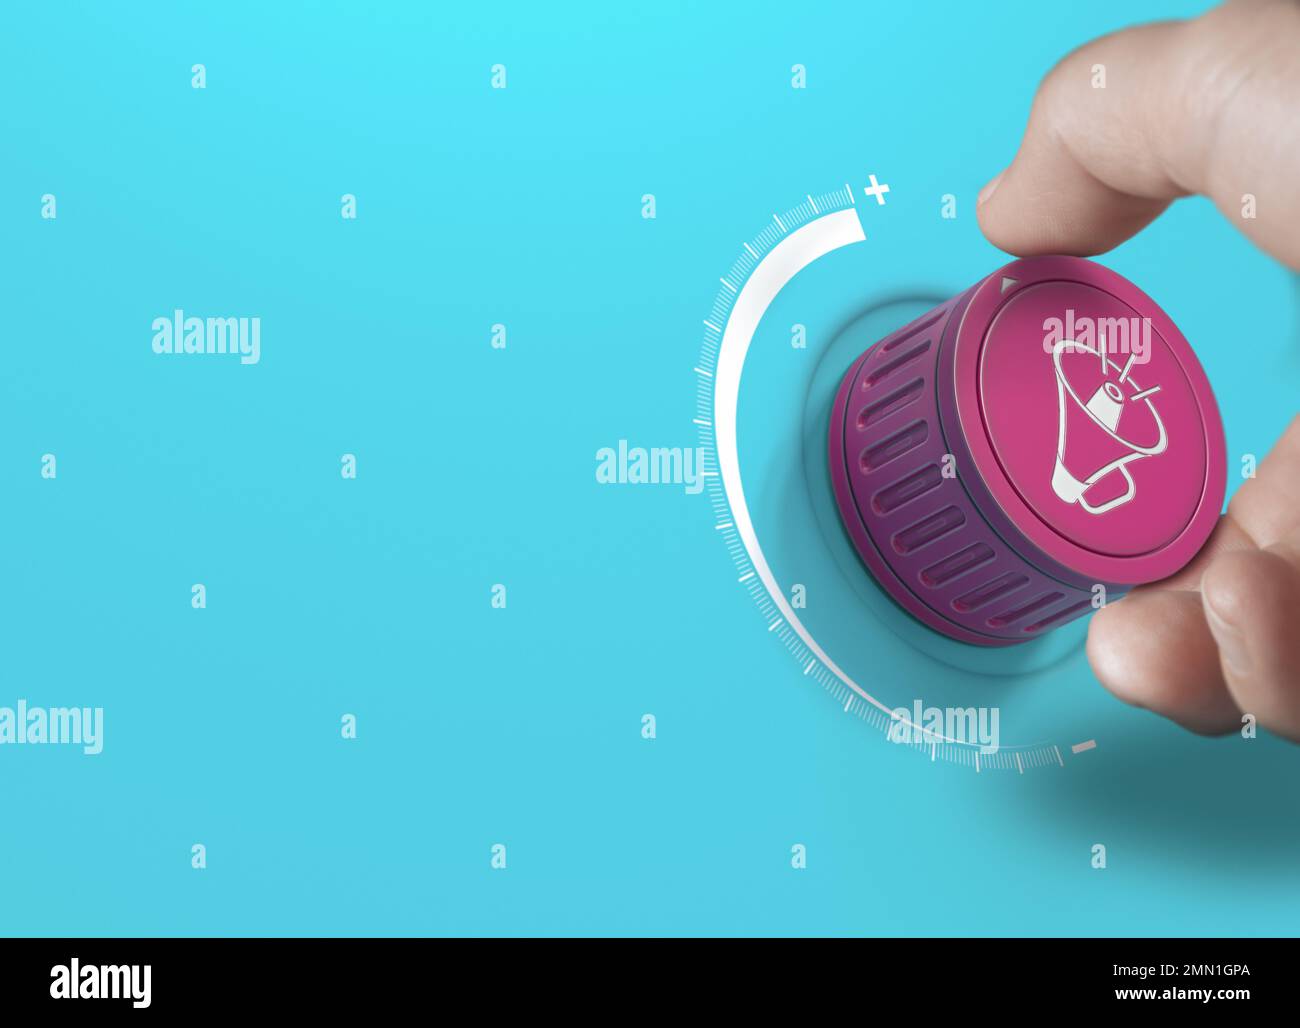 Homme tournant un bouton rose avec une icône de mégaphon. Stratégie de communication de la marque et concept publicitaire sur fond bleu avec espace de copie. Banque D'Images